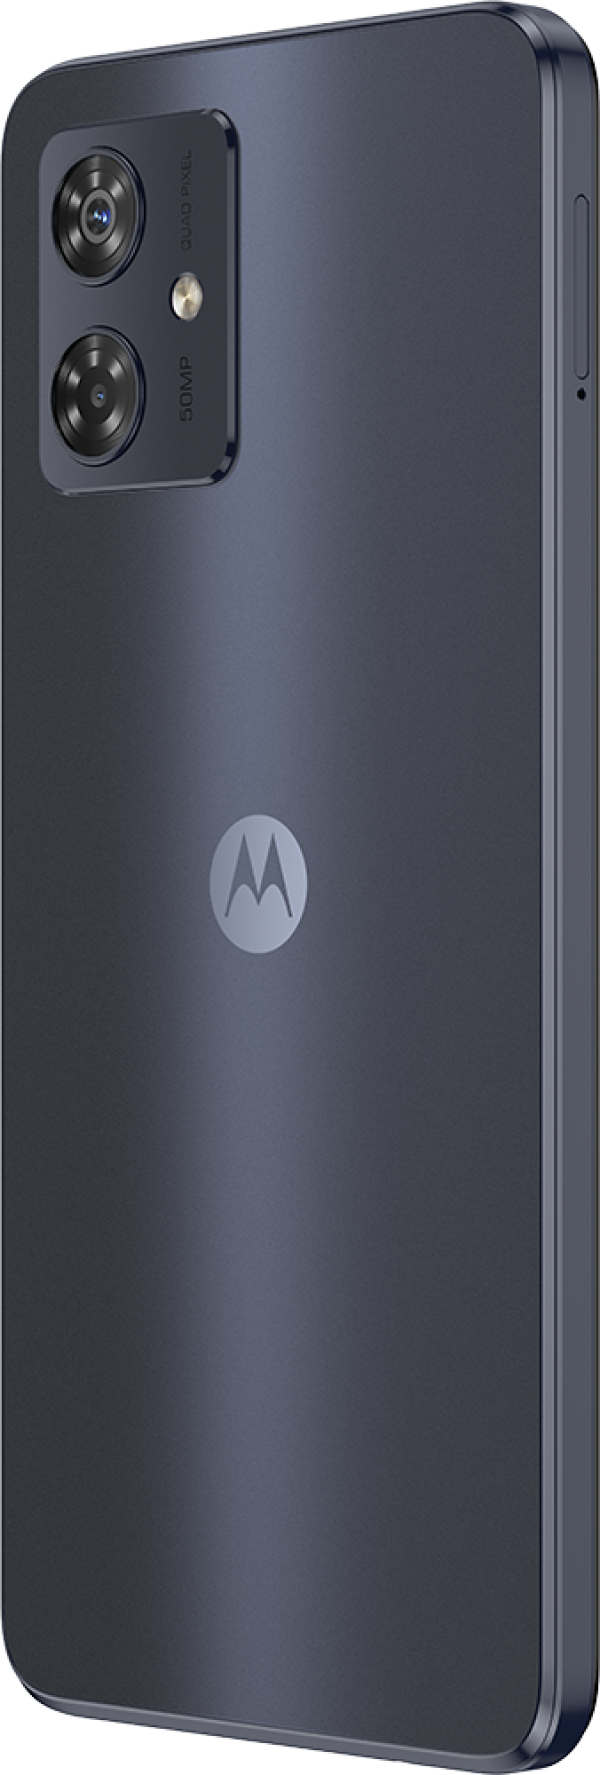 Motorola G54 5G Midnight Blue